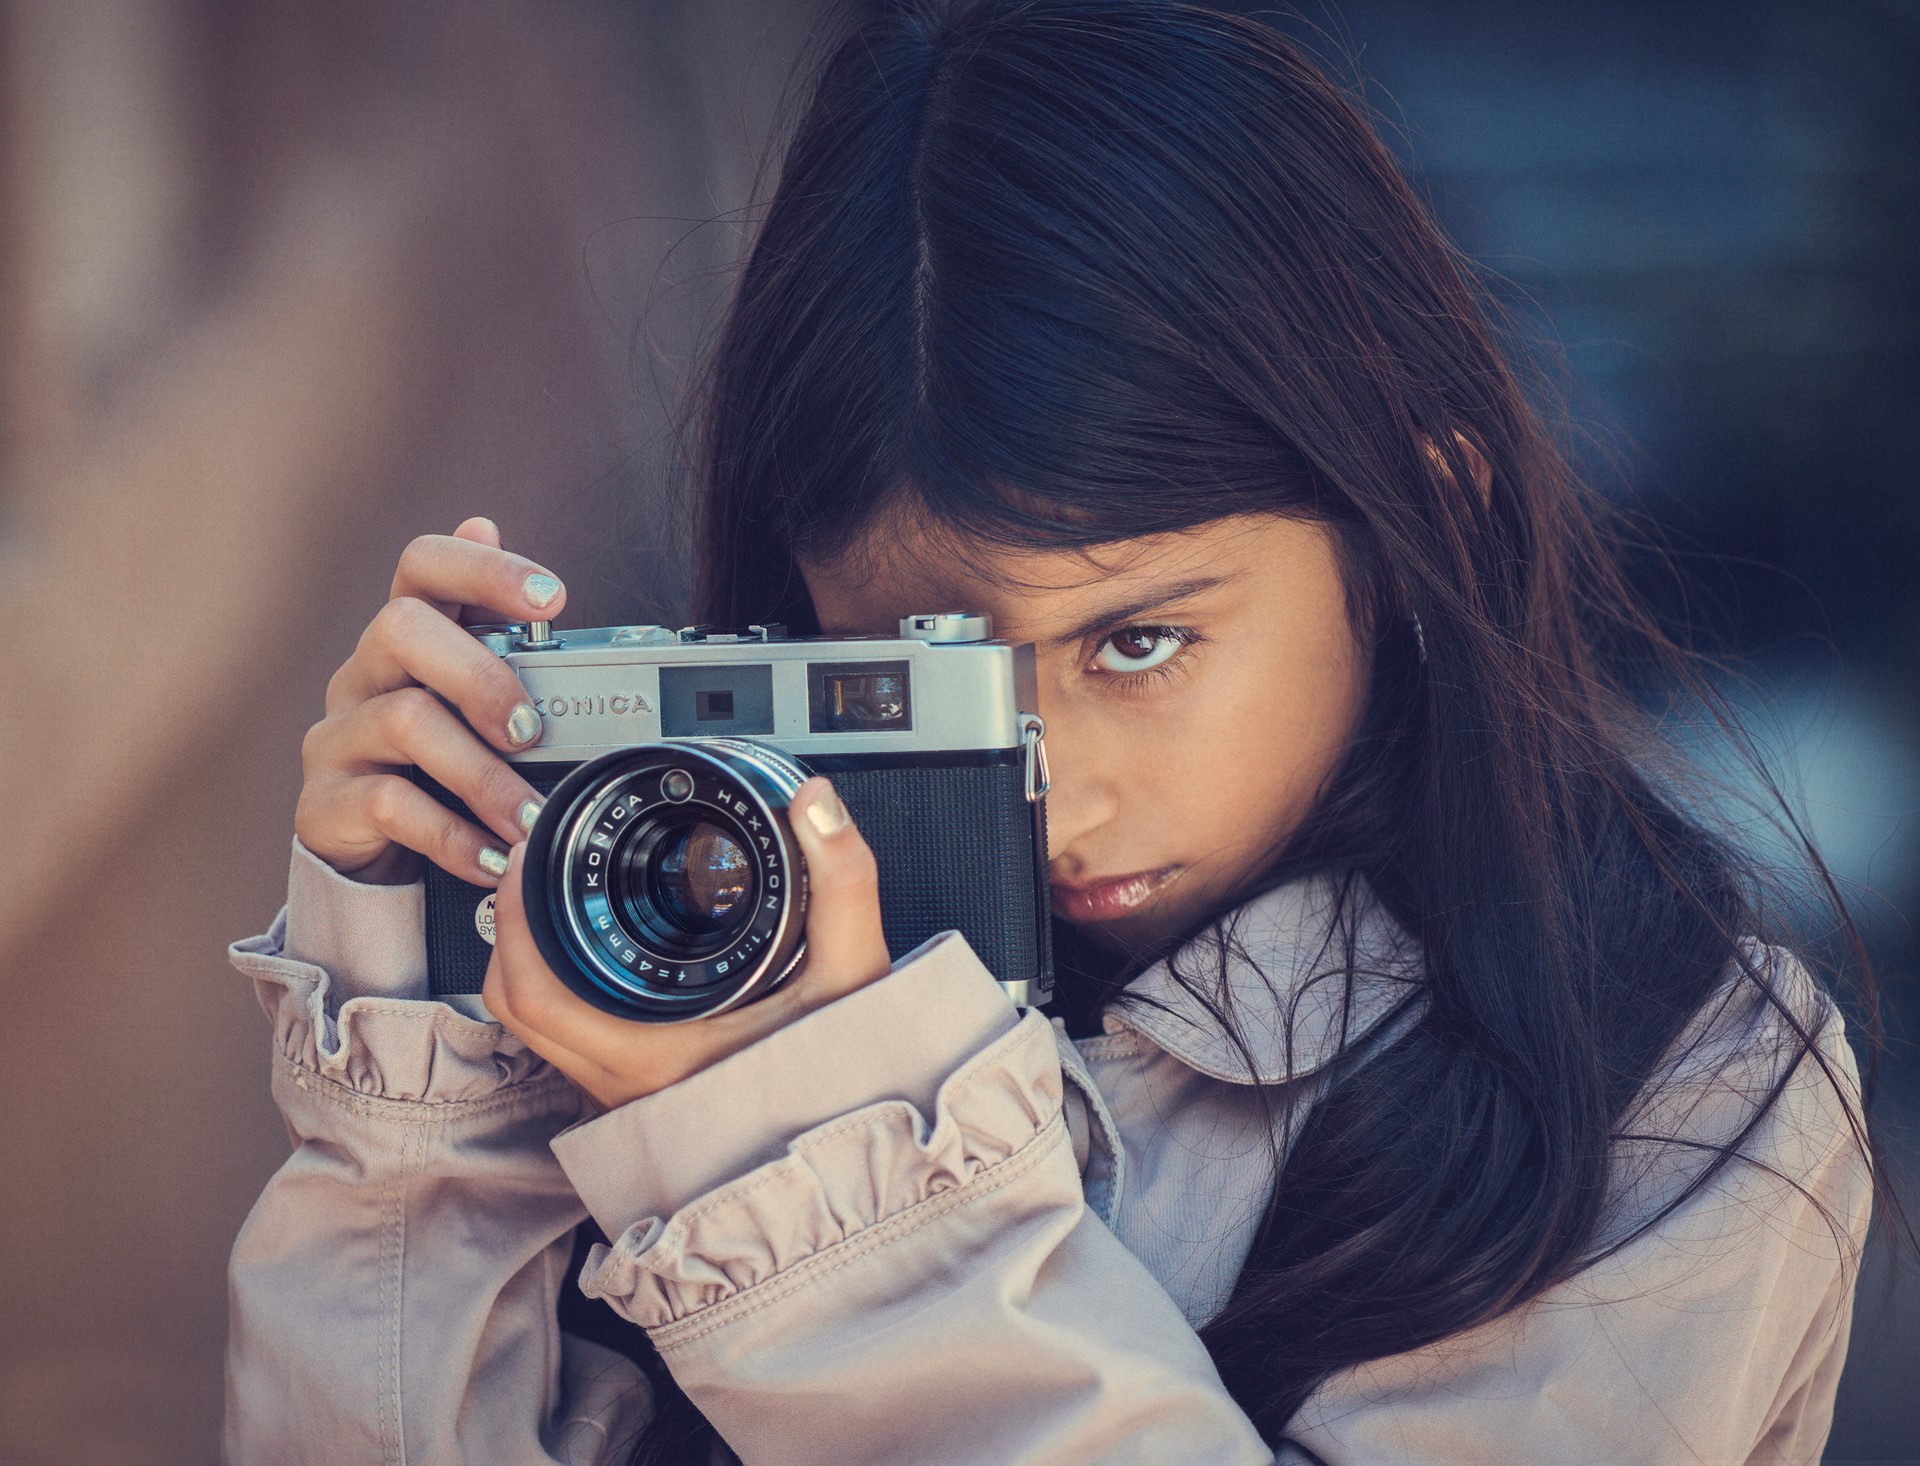 Focus konica little girls camera brunette girl photographer